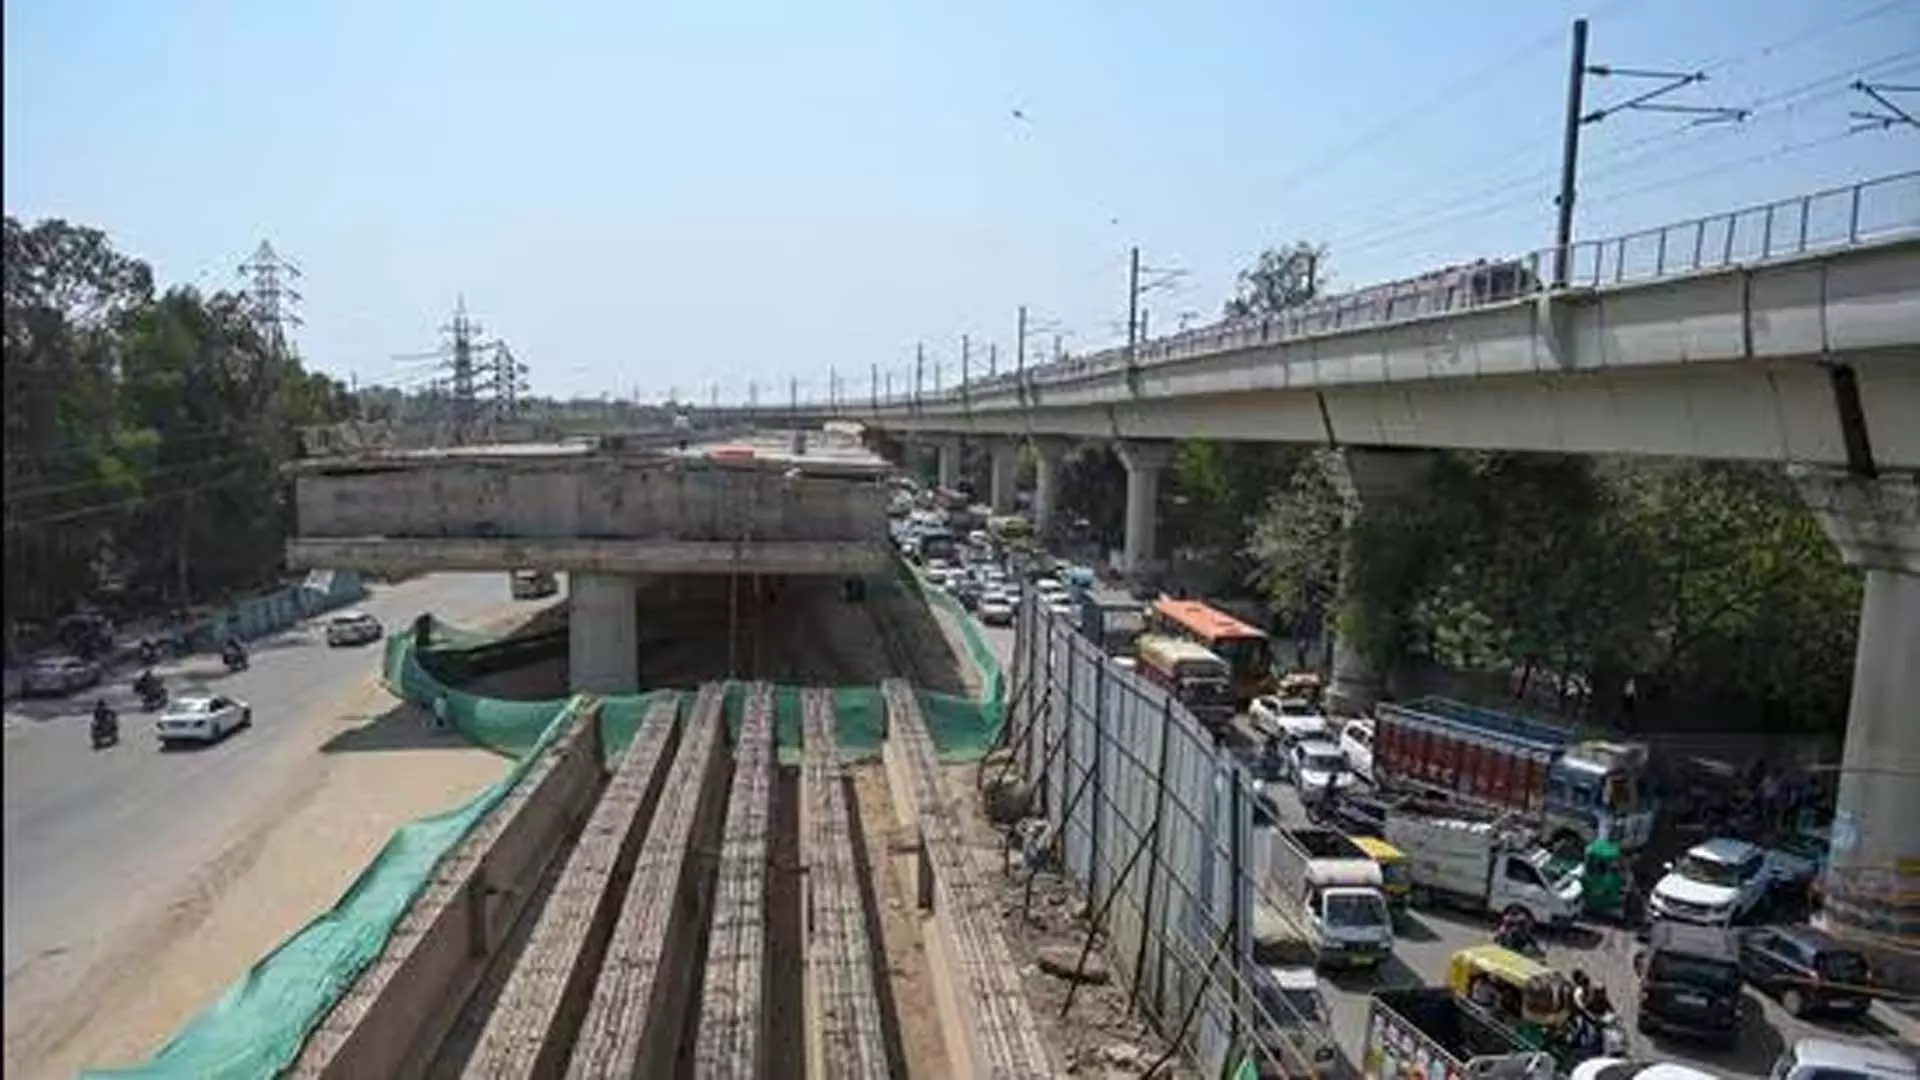 3 फ्लाईओवर में देरी से दिल्ली में यातायात संकट बढ़ने की संभावना